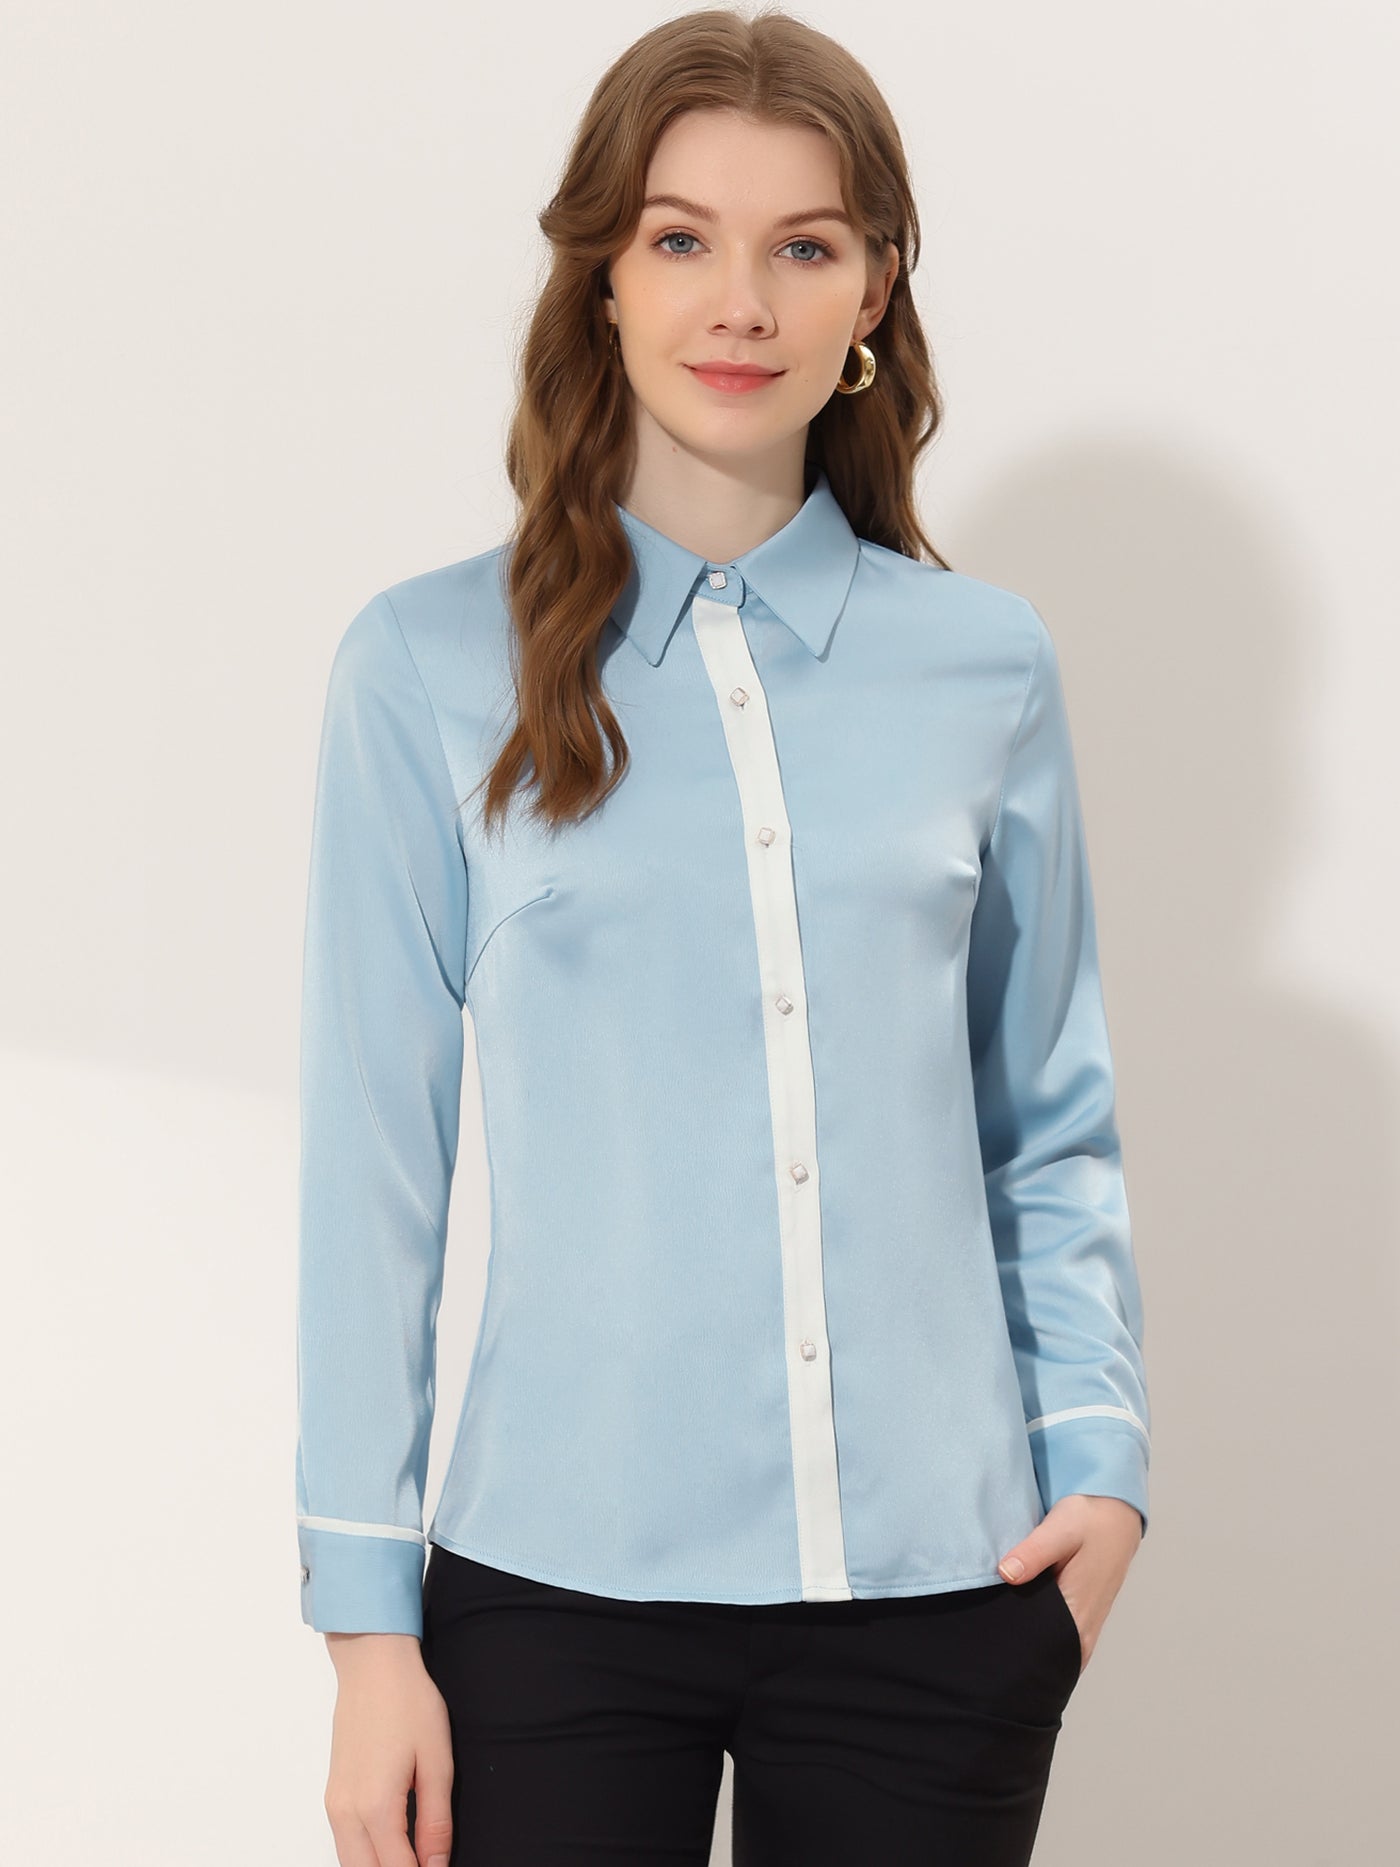 Allegra K Work Office Long Sleeve Contrast Trim Button Up Satin Blouse Shirt